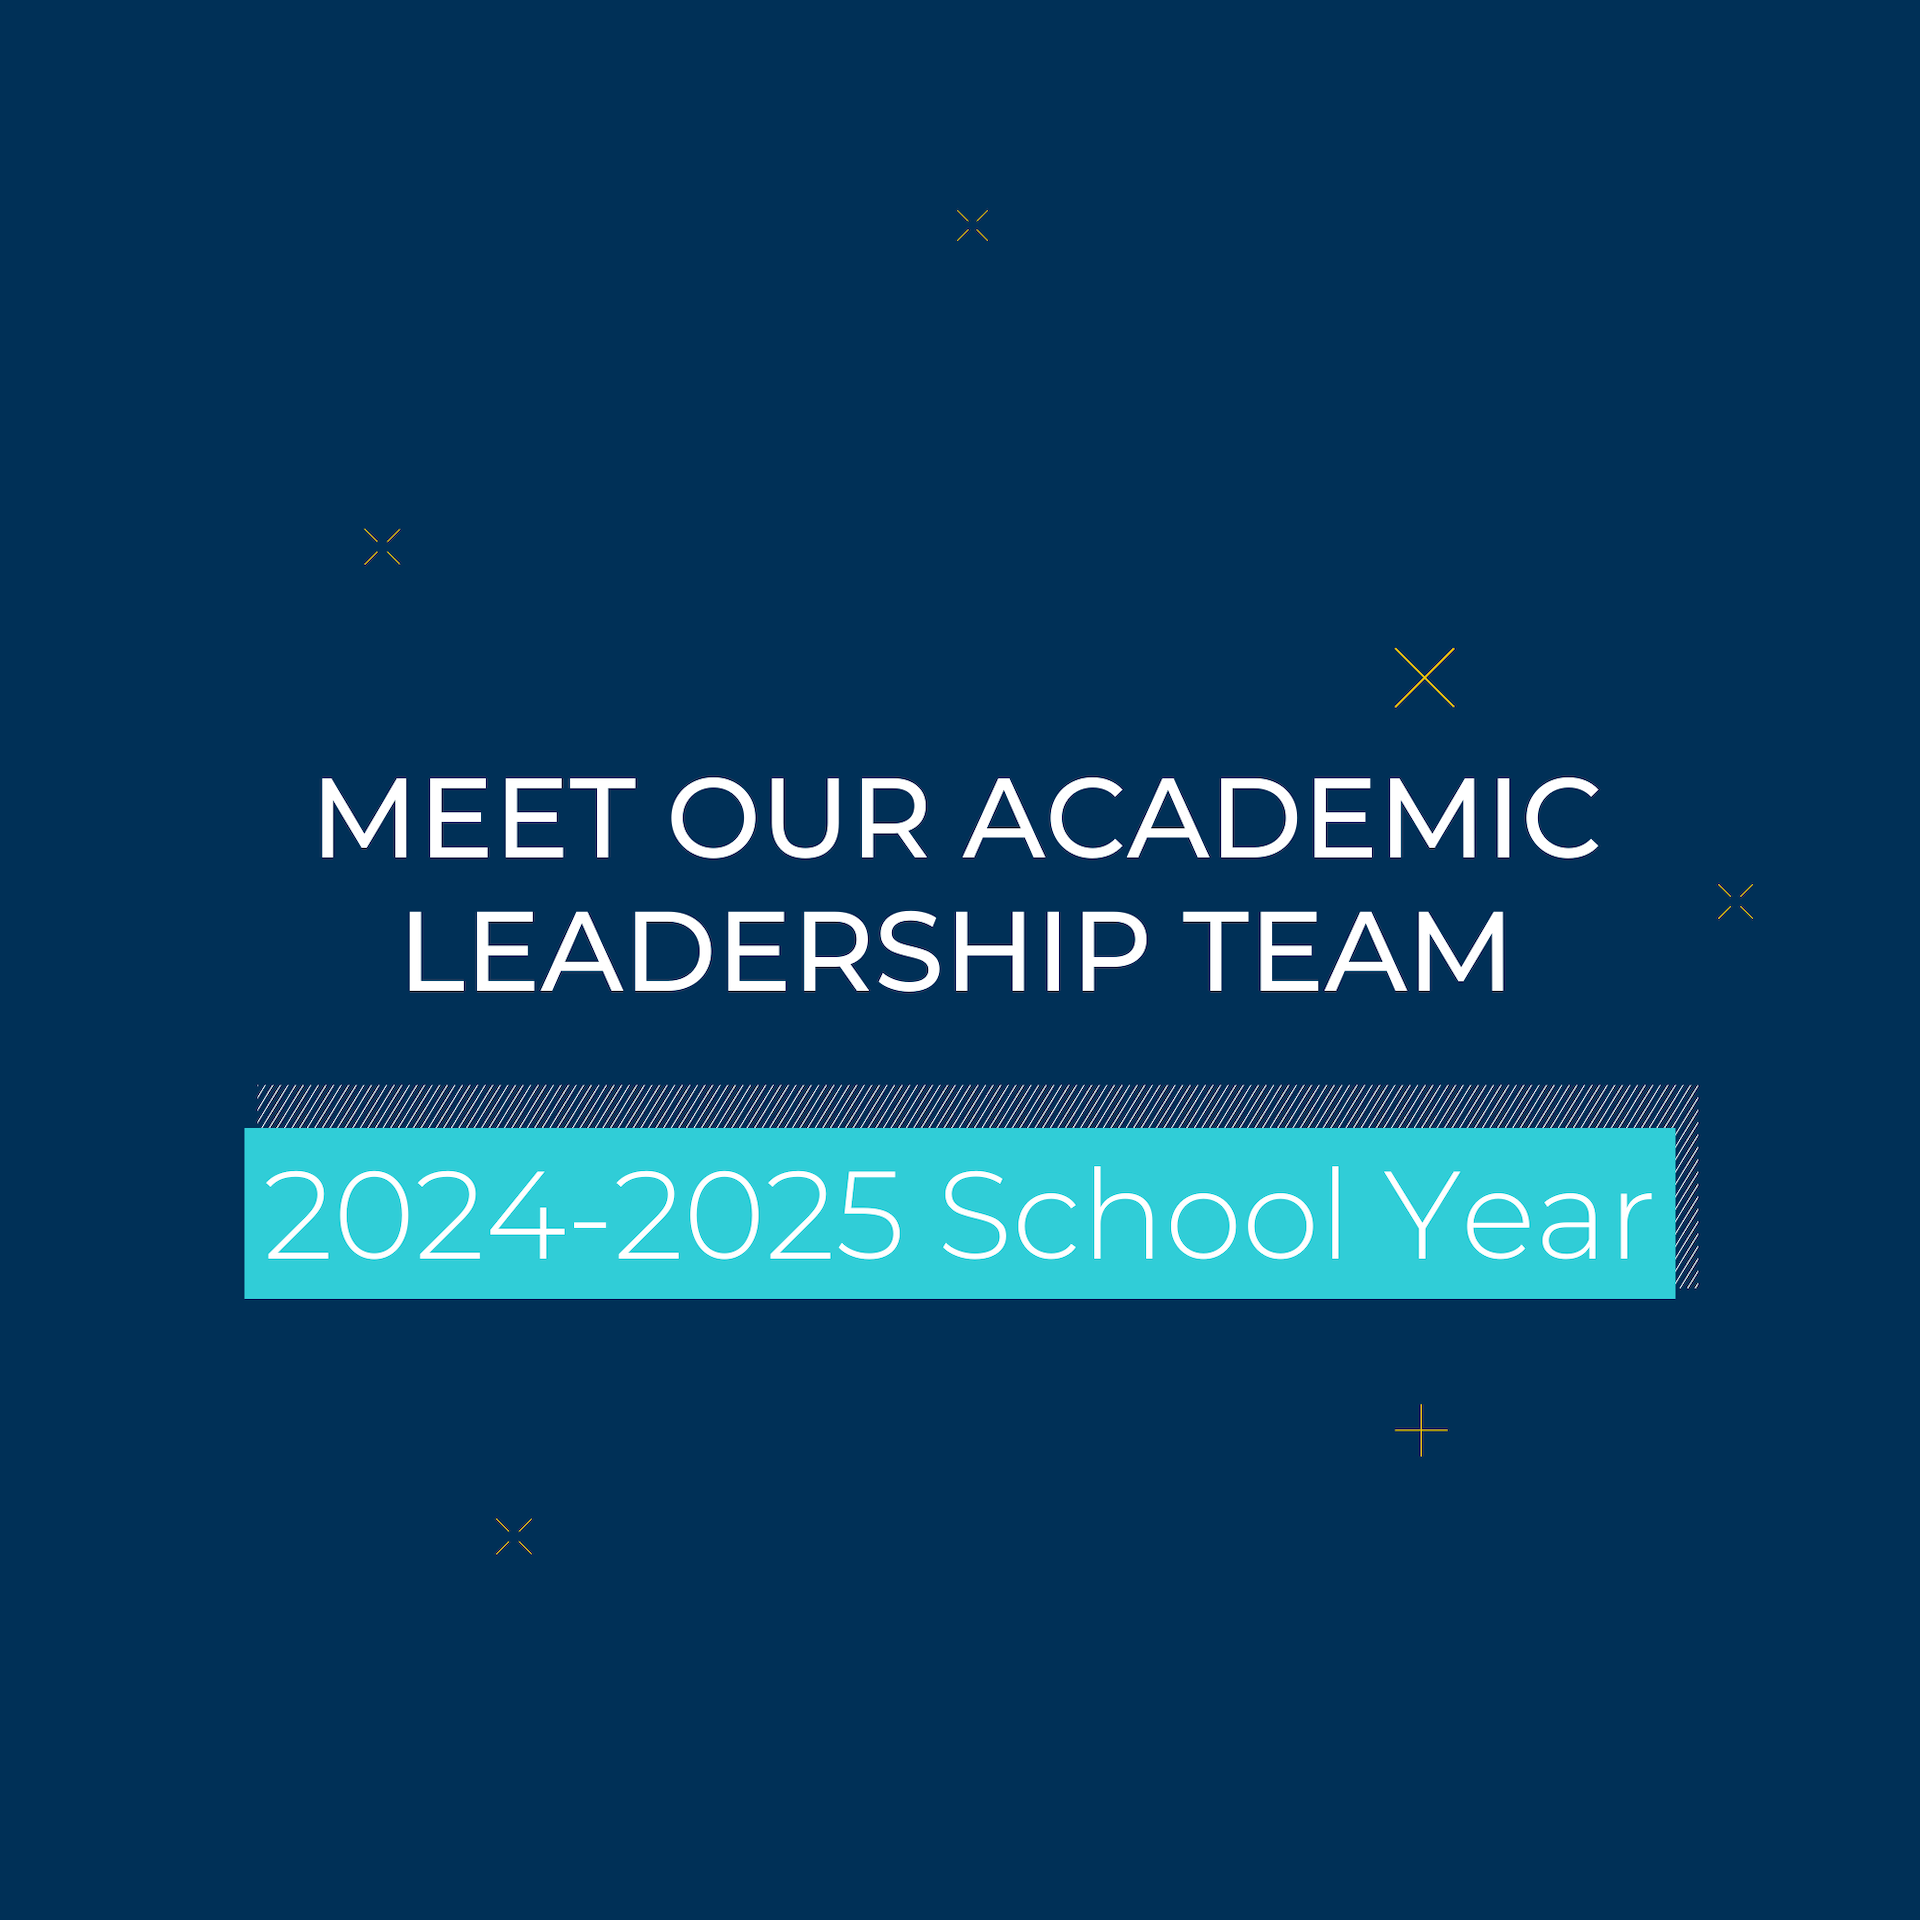 Meet Our Academic Leadership Team in 2024-2025 School Year - Meet Our Academic Leadership Team in 2024-2025 School Year